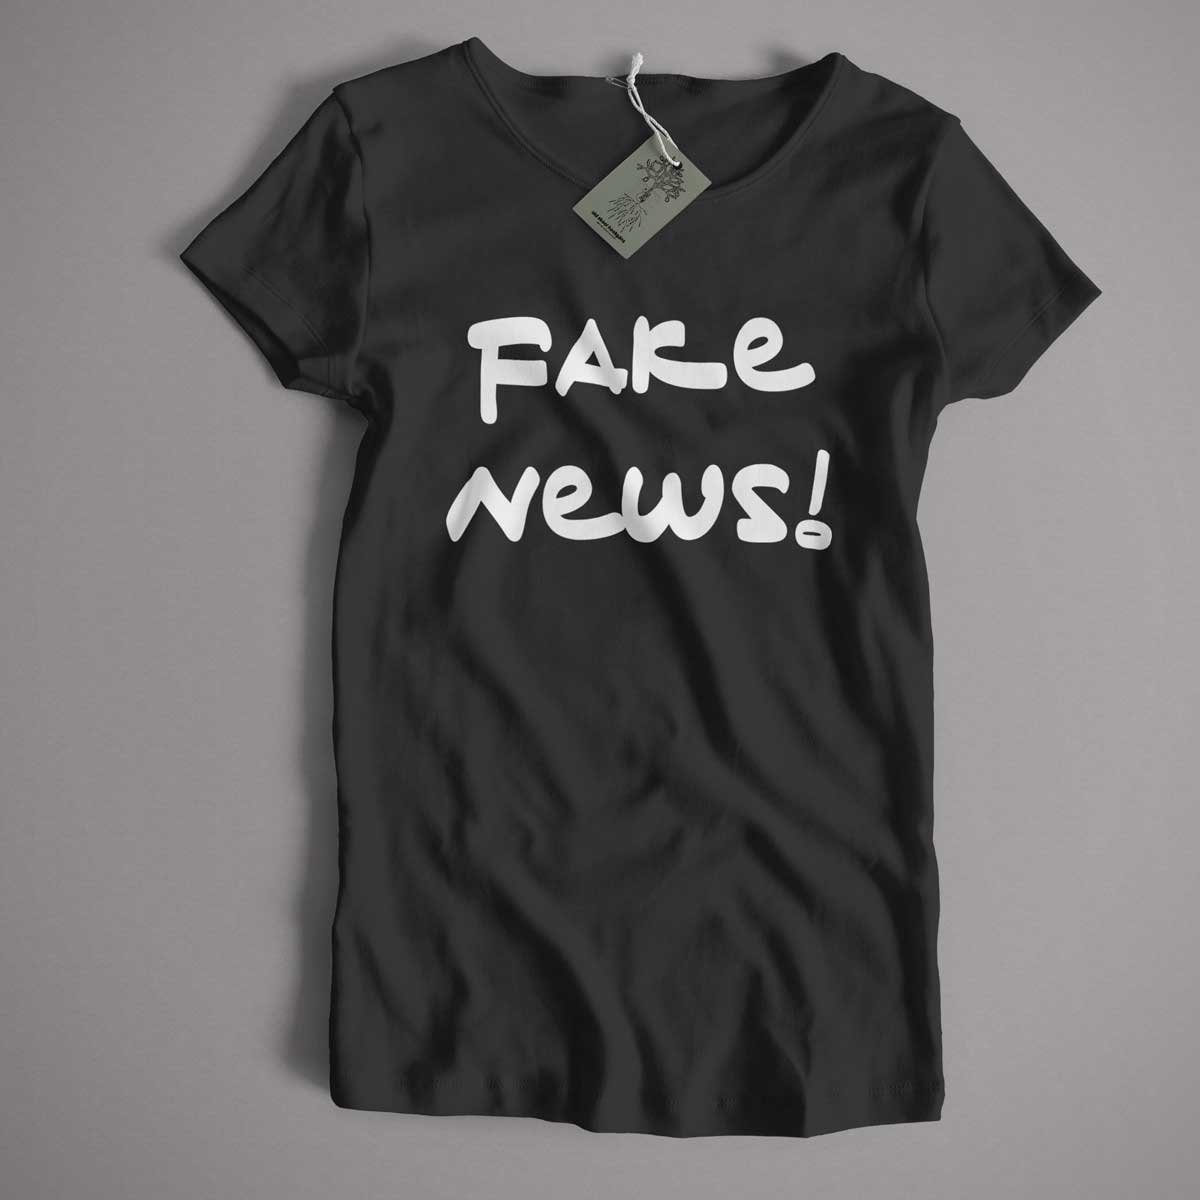 Fake News T Shirt - A Simple Political Tee!